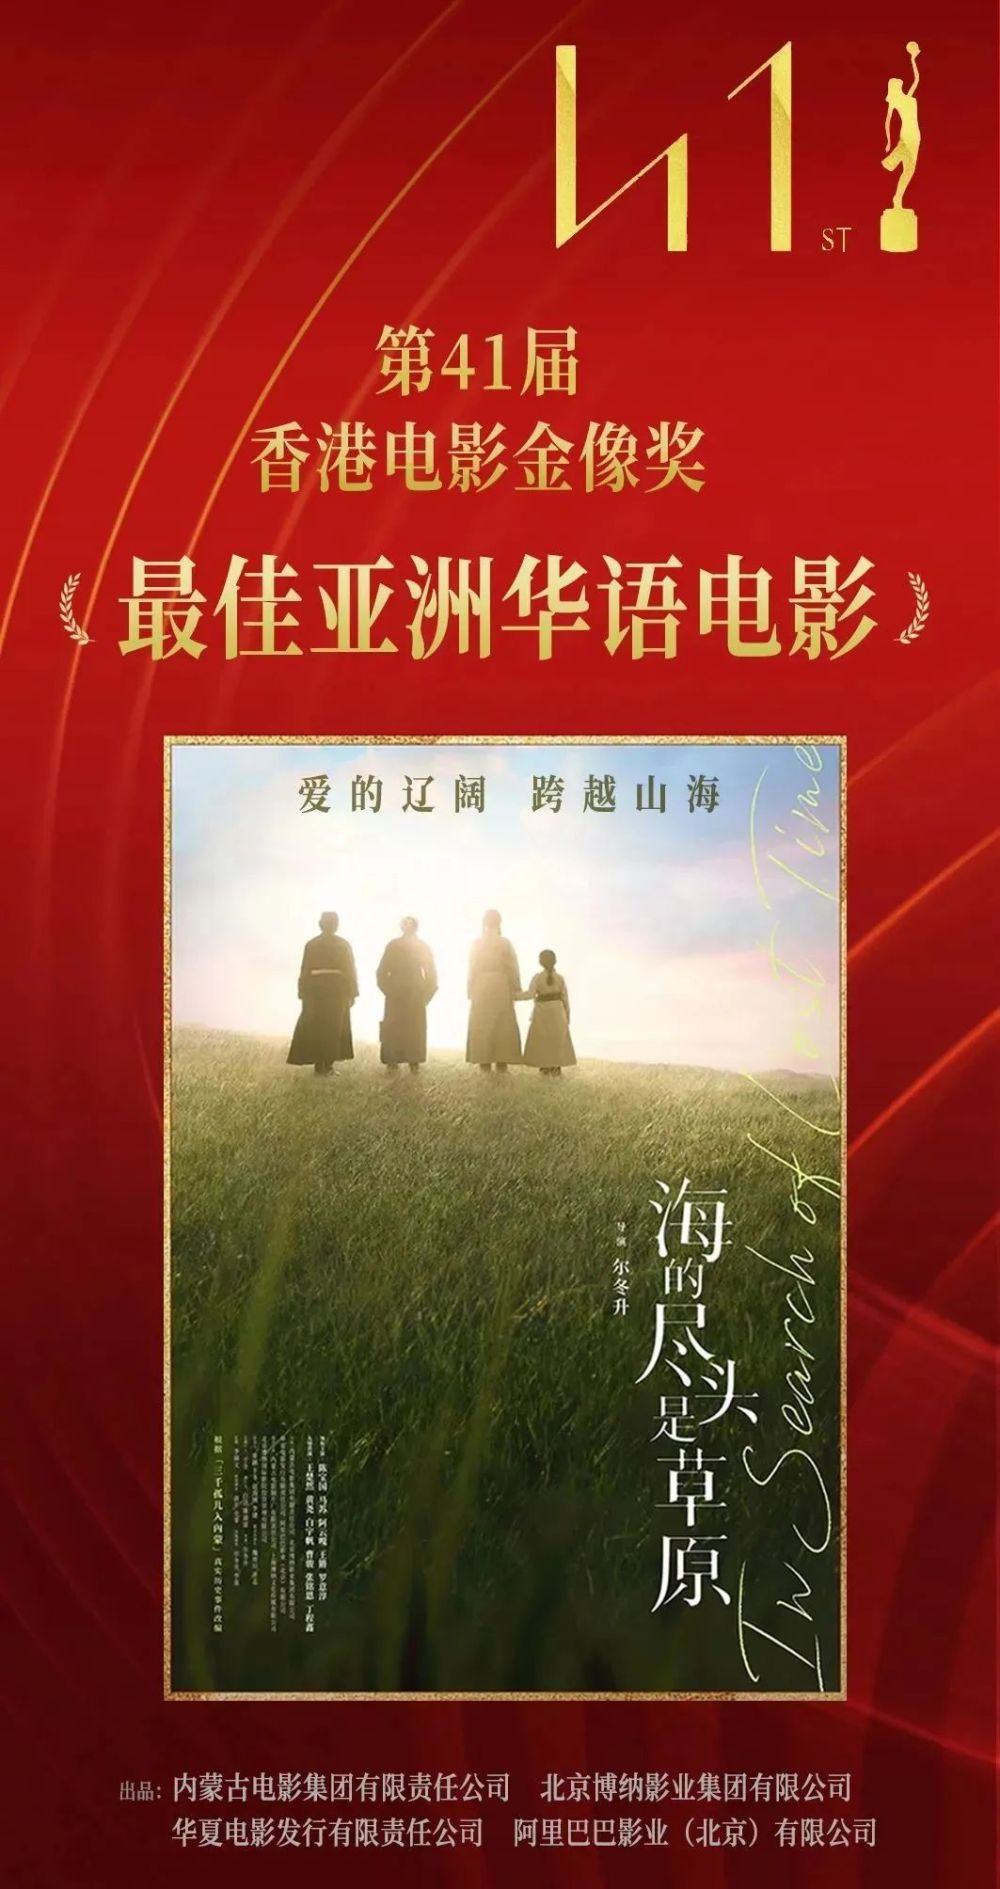 海的尽头是草原》荣获第41届香港电影金像奖最佳亚洲华语电影_腾讯新闻 image